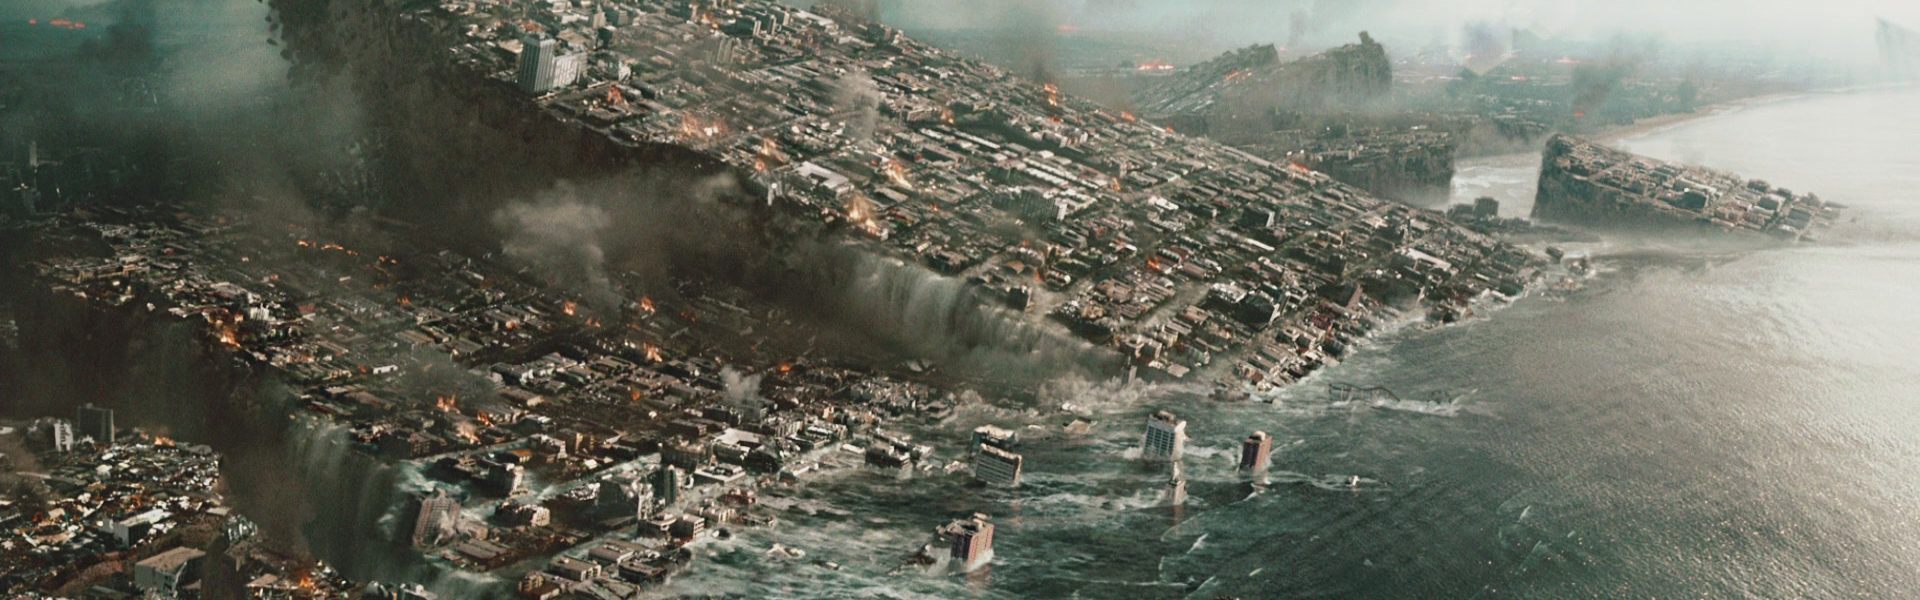 9 bộ phim thảm hoạ thiên nhiên gây choáng ngợp